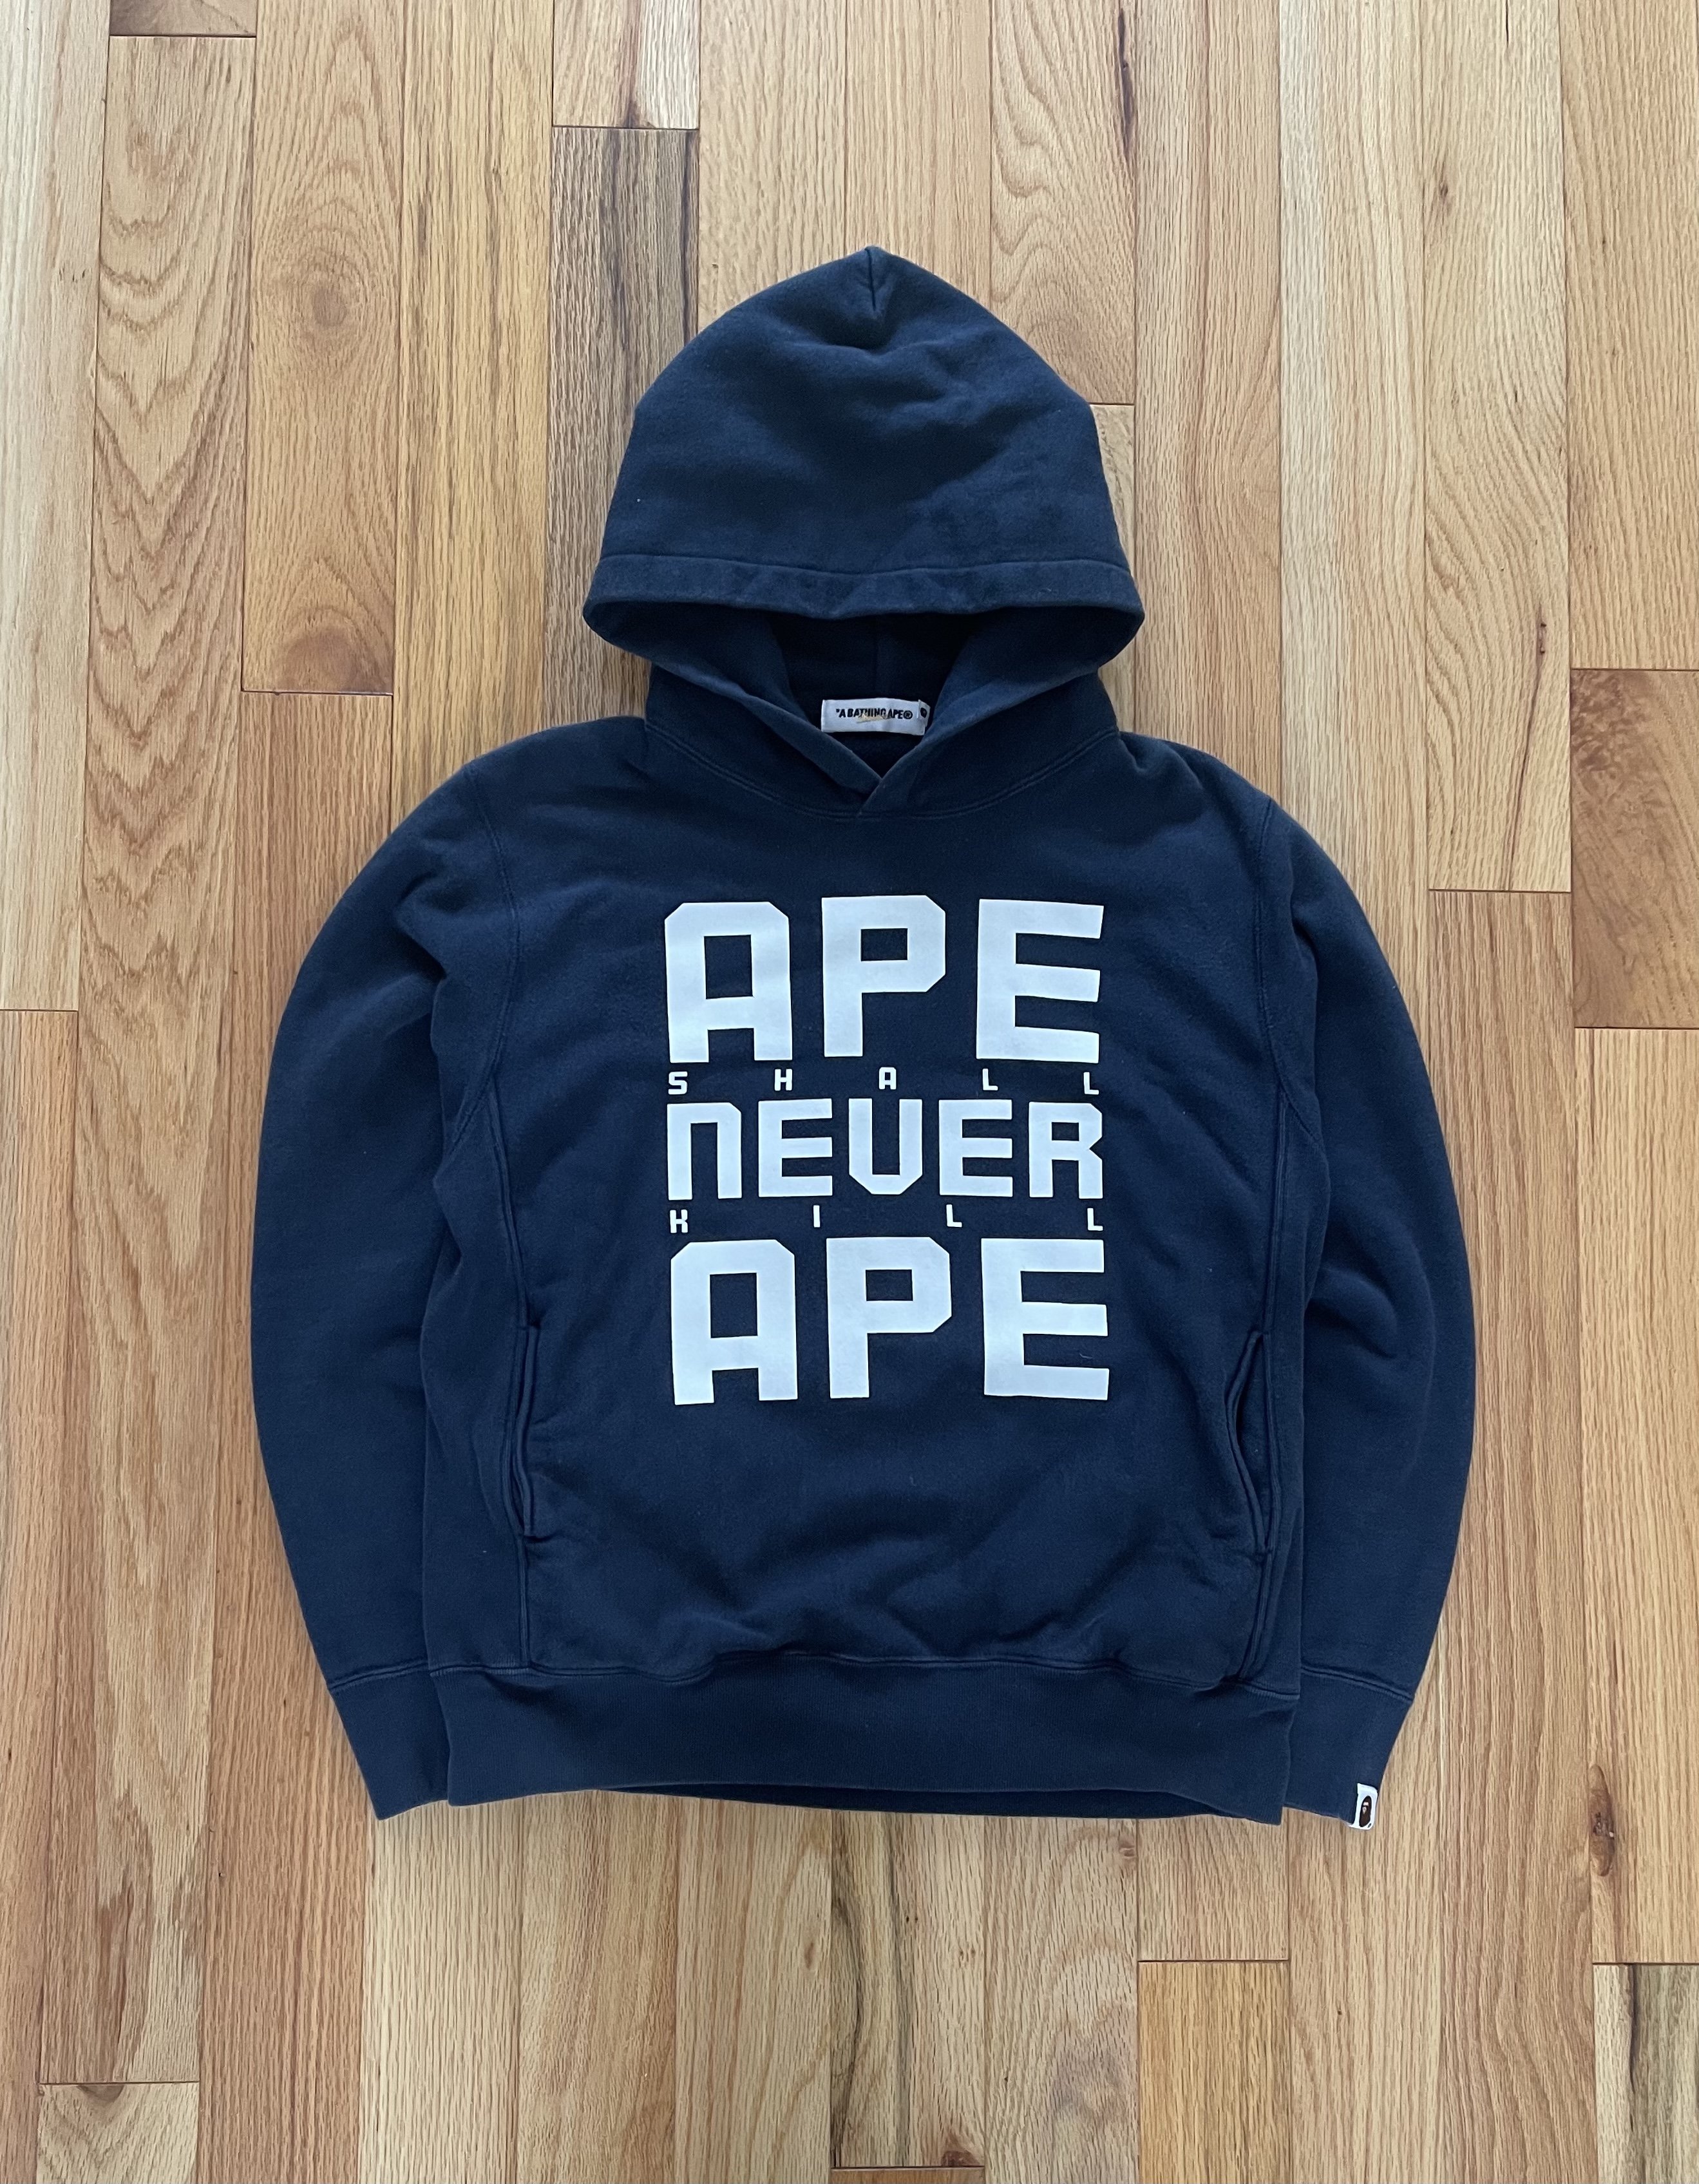 Bape “Ape Shall Never Kill Ape” Hoodie | Buy & Designer, Streetwear & Vintage Clothing for Men & Women